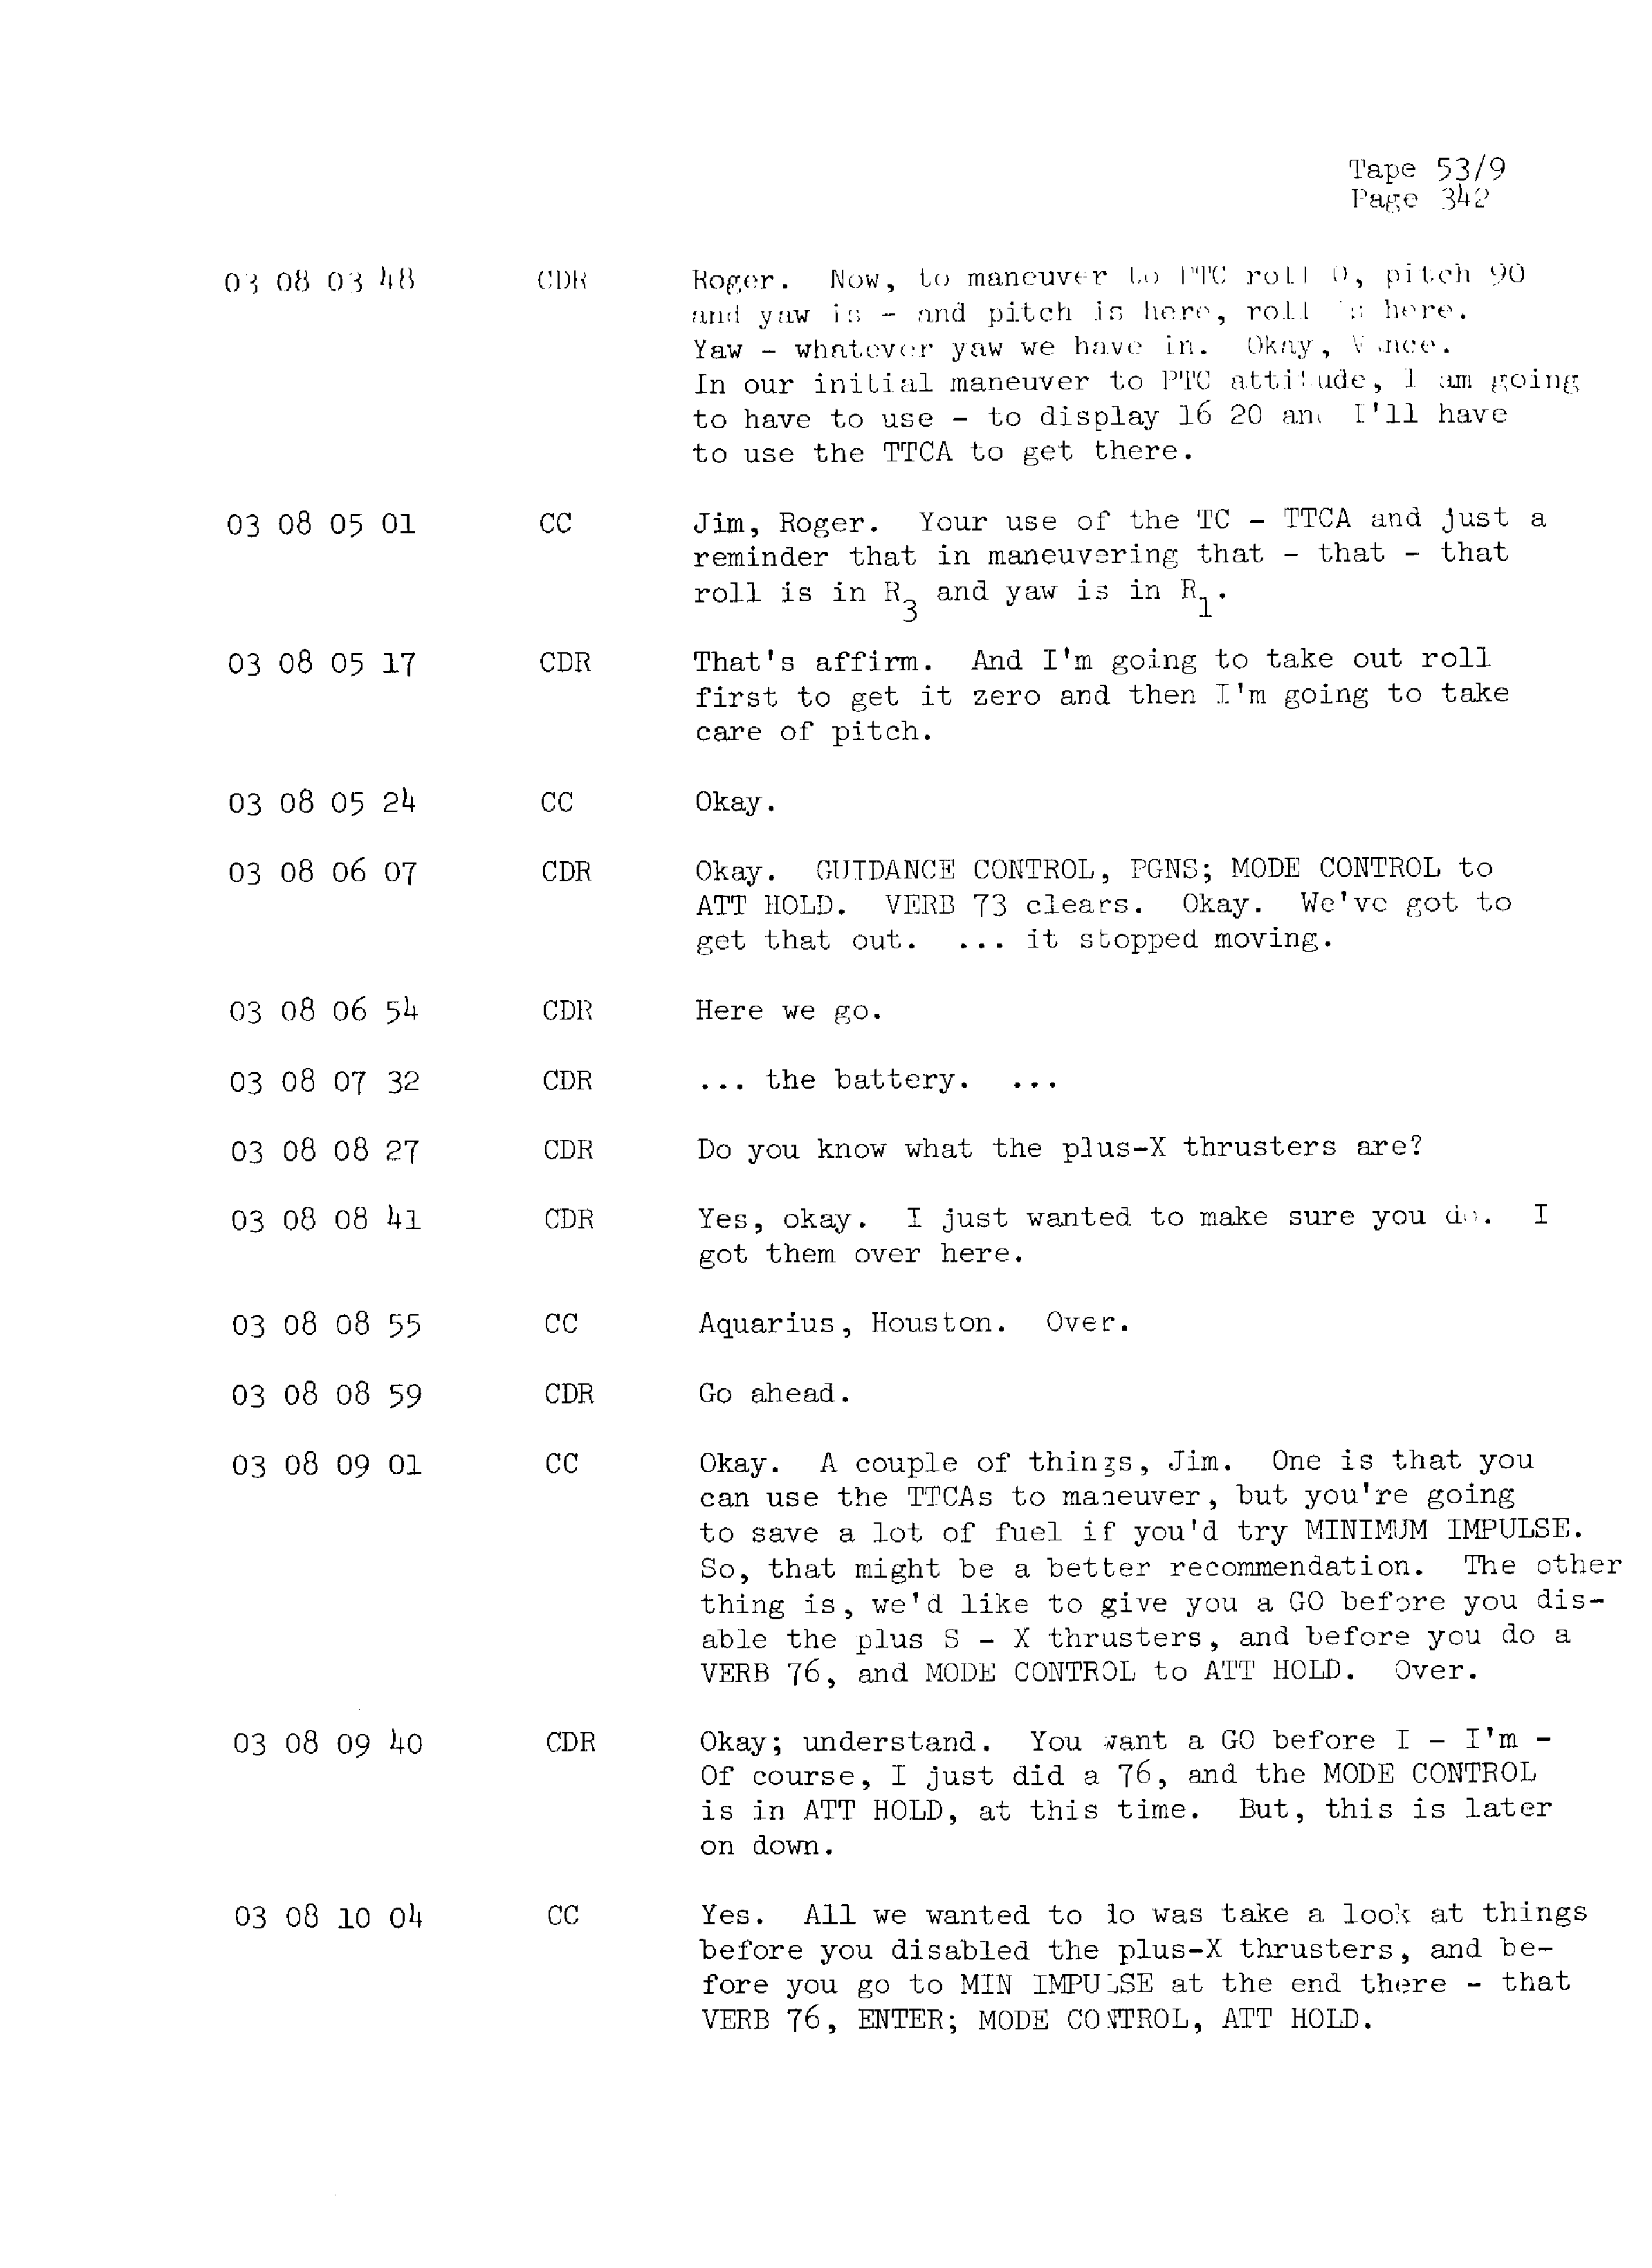 Page 349 of Apollo 13’s original transcript